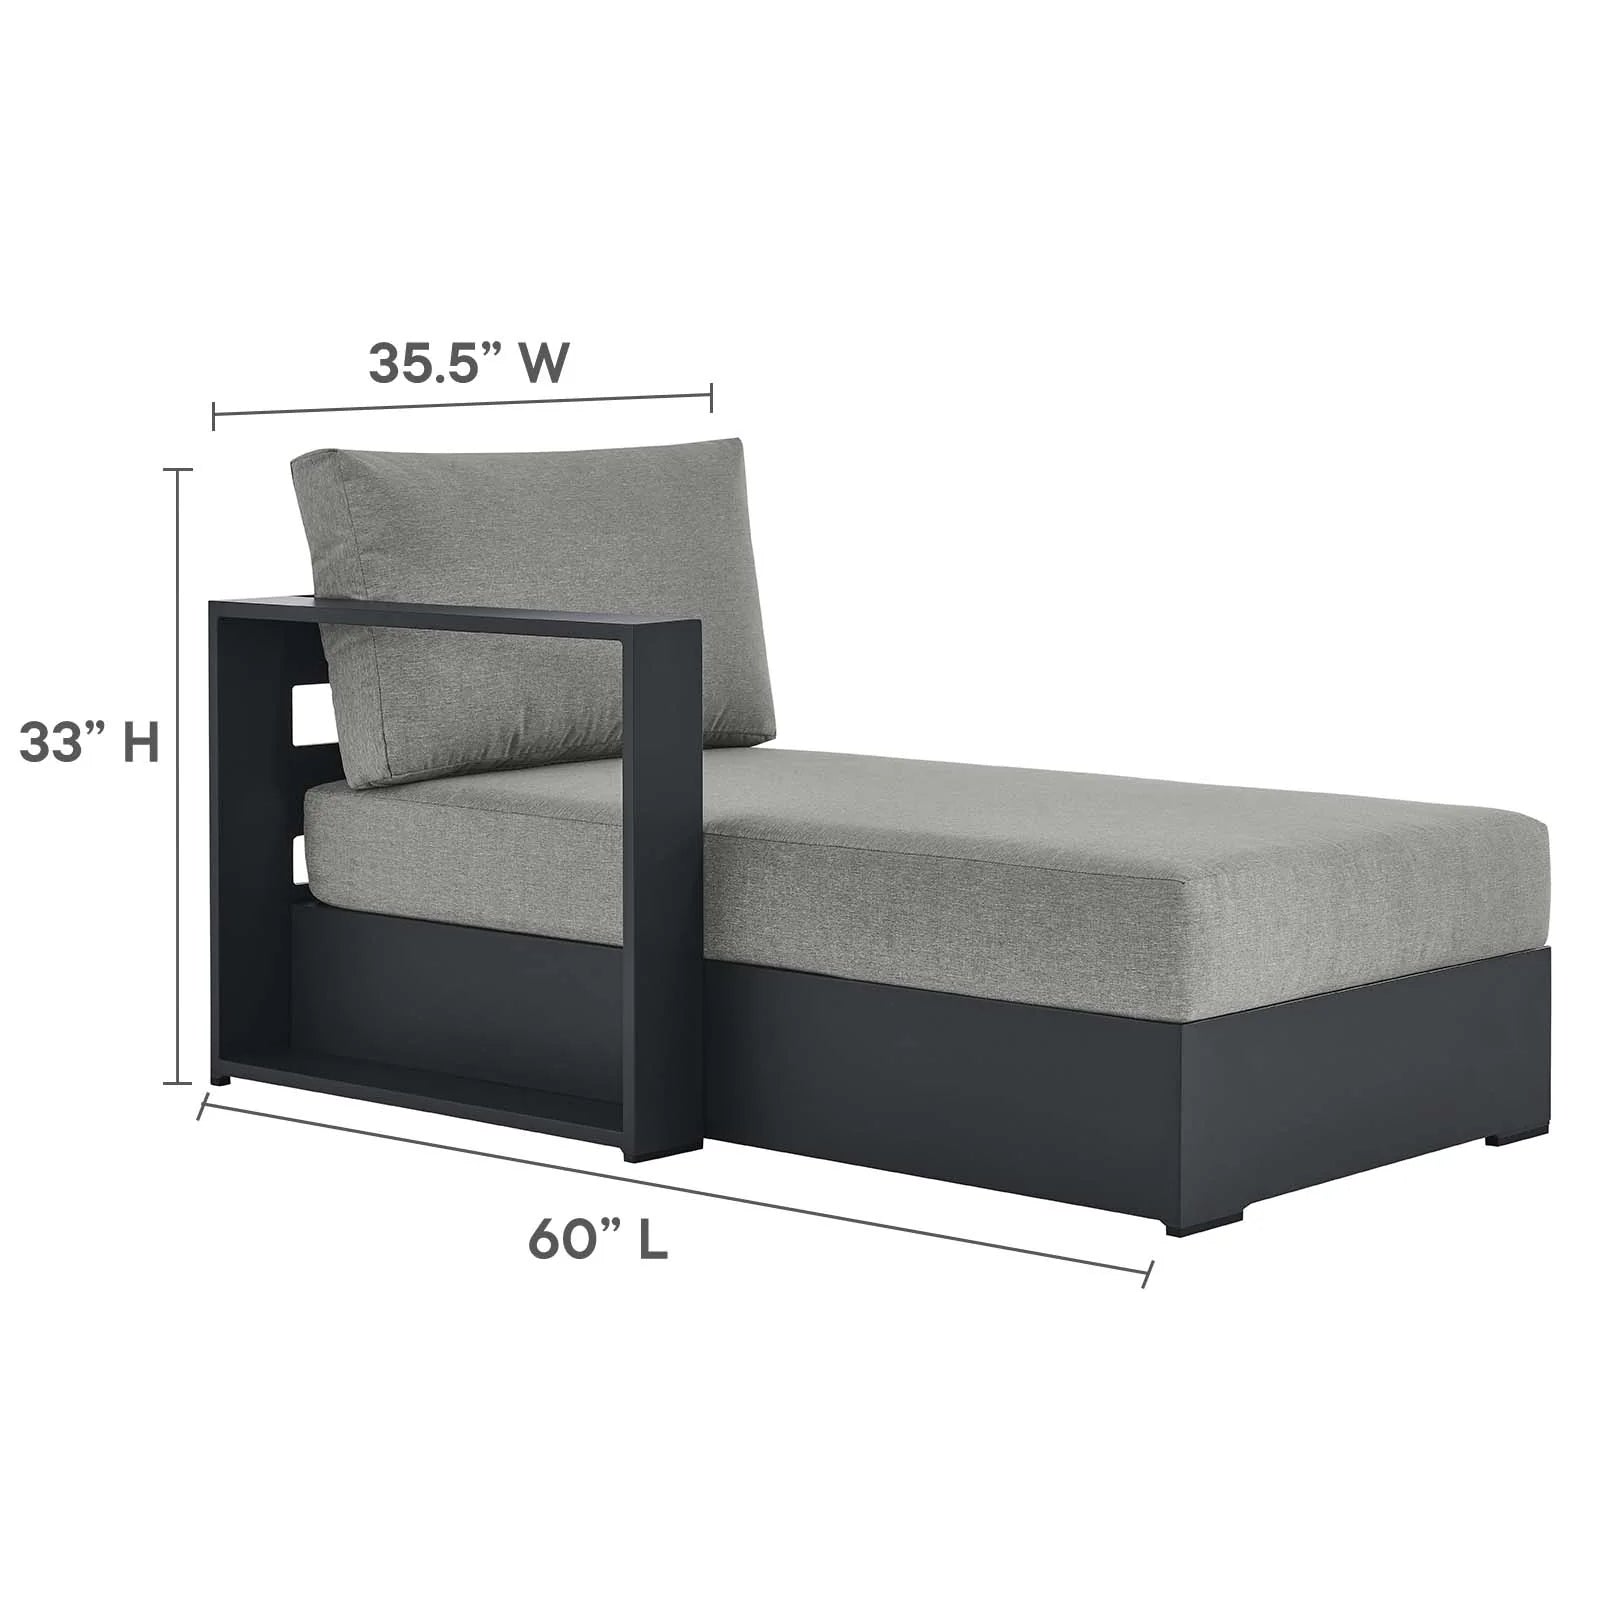 Chaise gris para exteriores de aluminio Neuba - Izquierdo Modular dimensiones.